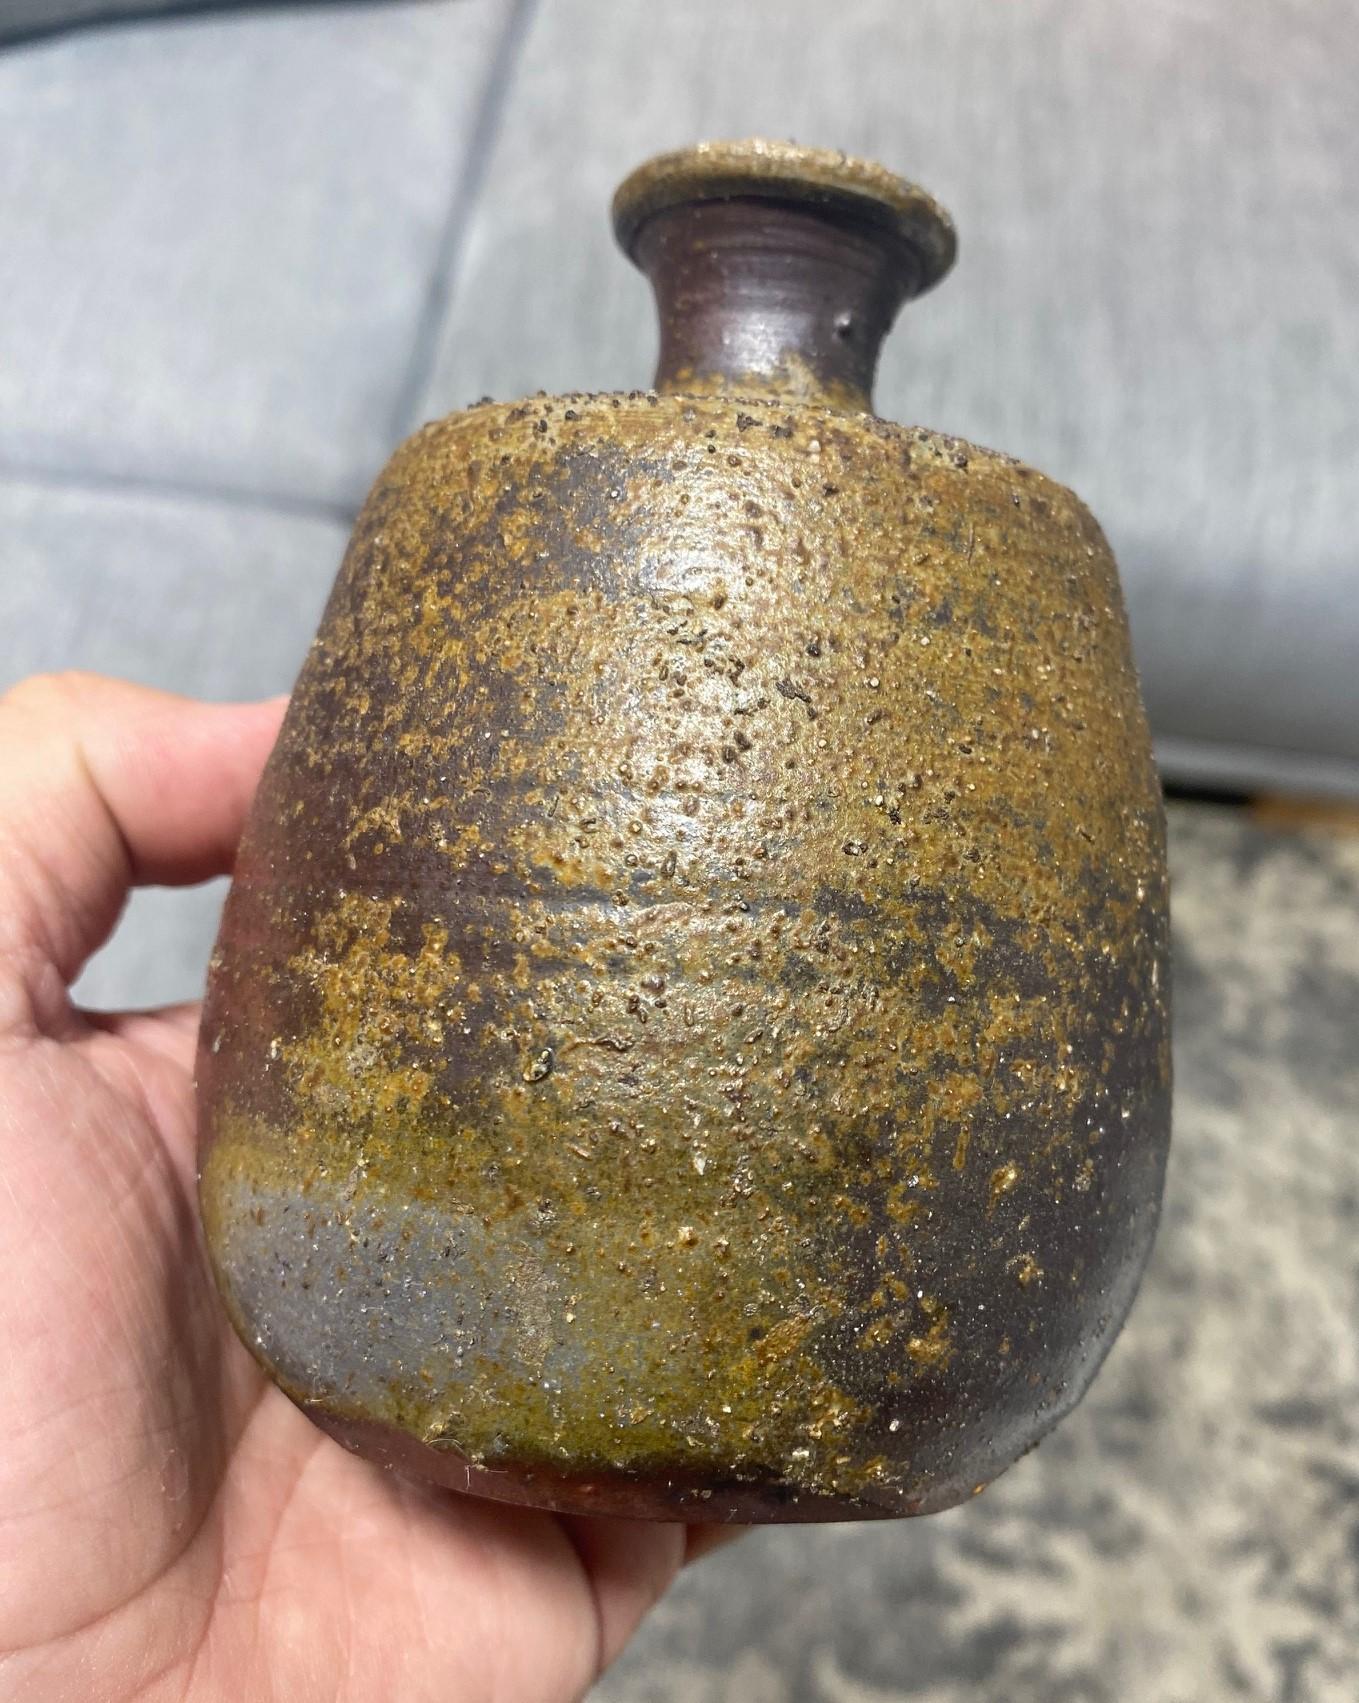 Kaneshige Toyo National Treasure Signed Japanese Bizen Pottery Sake Bottle Vase For Sale 2